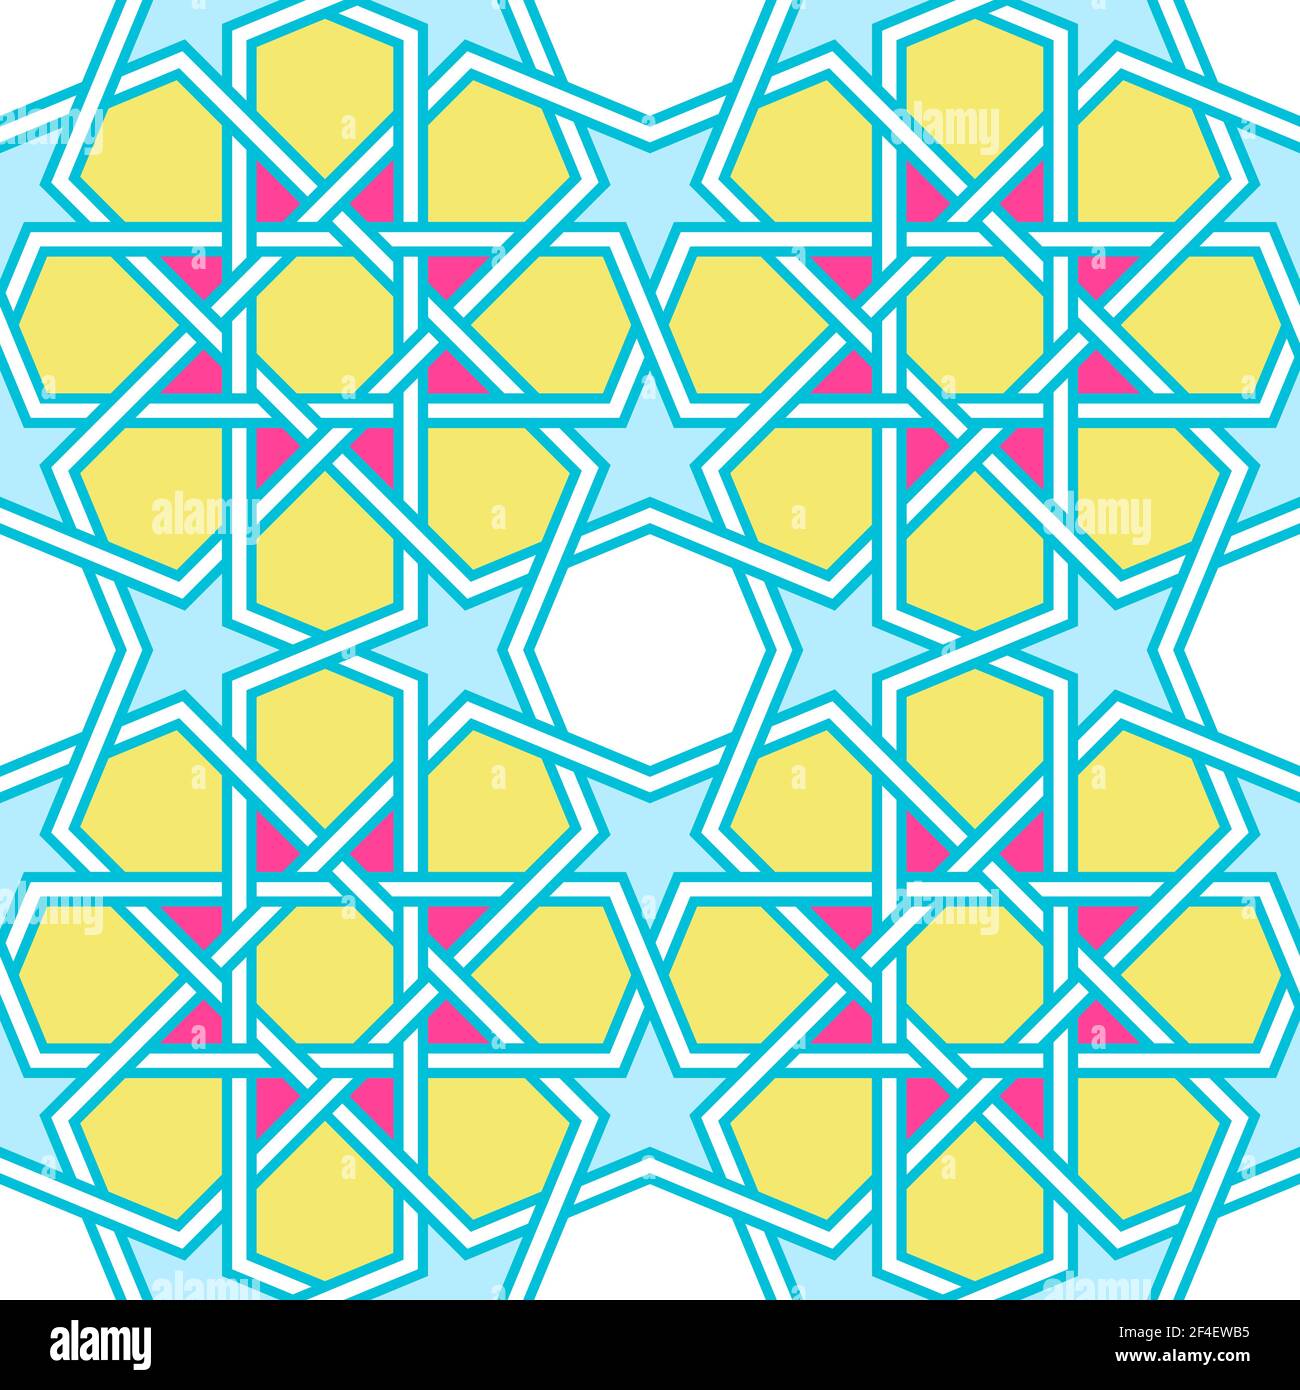 Modernes verworrenes Gittermuster, inspiriert von traditioneller arabischer Geometrie. Nahtloses Vektor-Hintergrundmuster. Bright Bold Neon 1980s Farben - rosa, gelb Stock Vektor